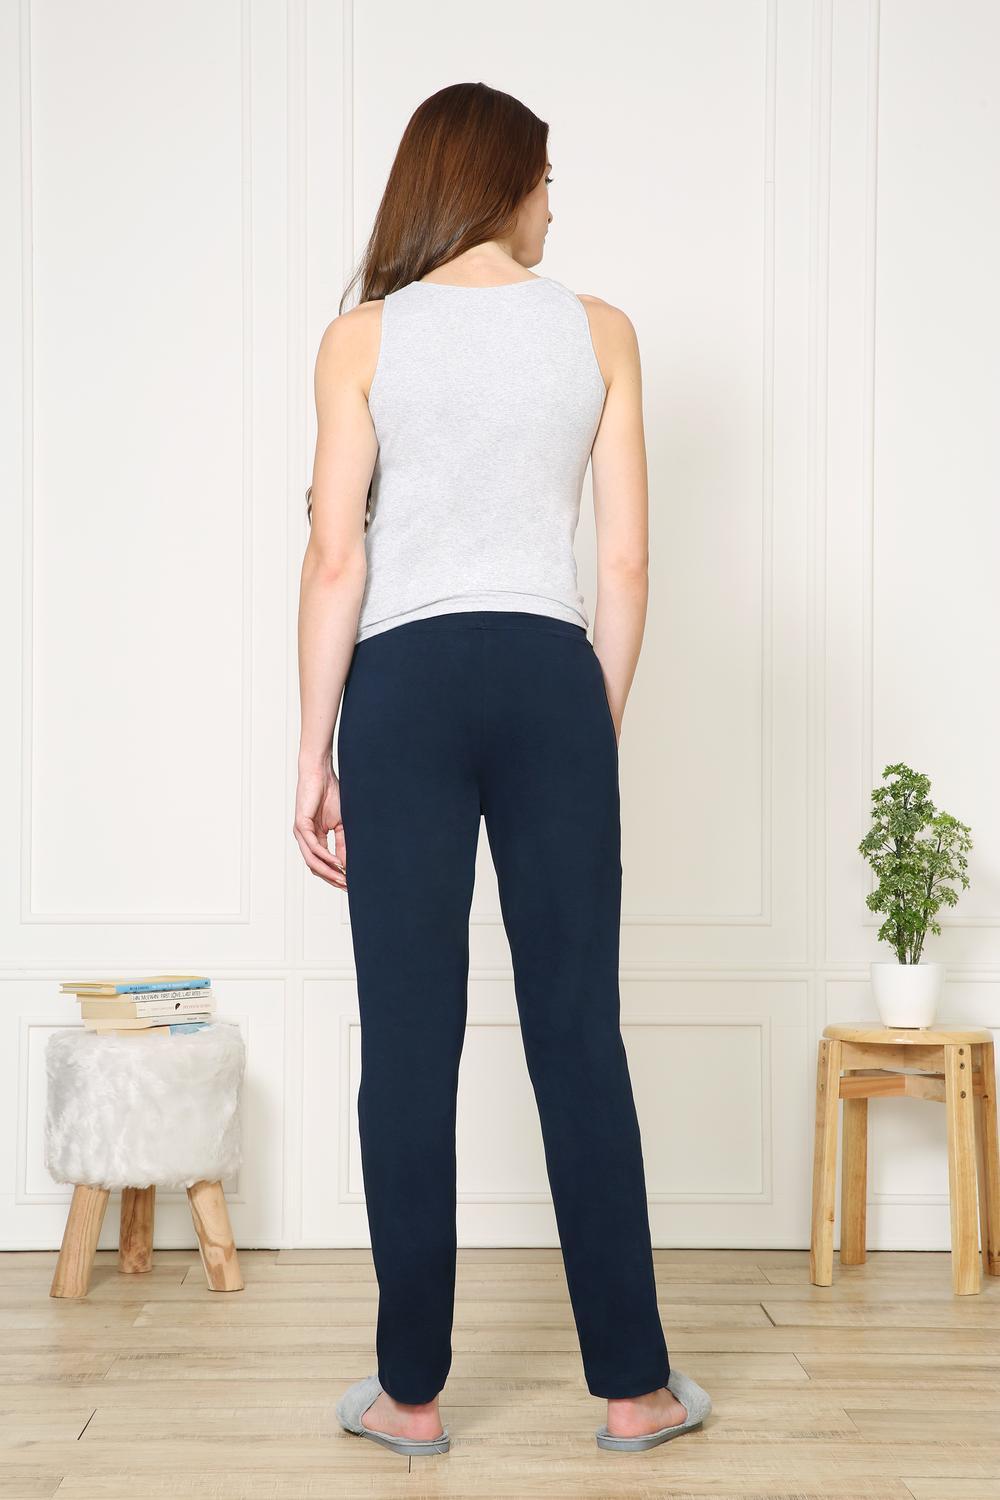 Van Heusen Women's Dark Blue Stretch Pajamas with Pockets - Stilento